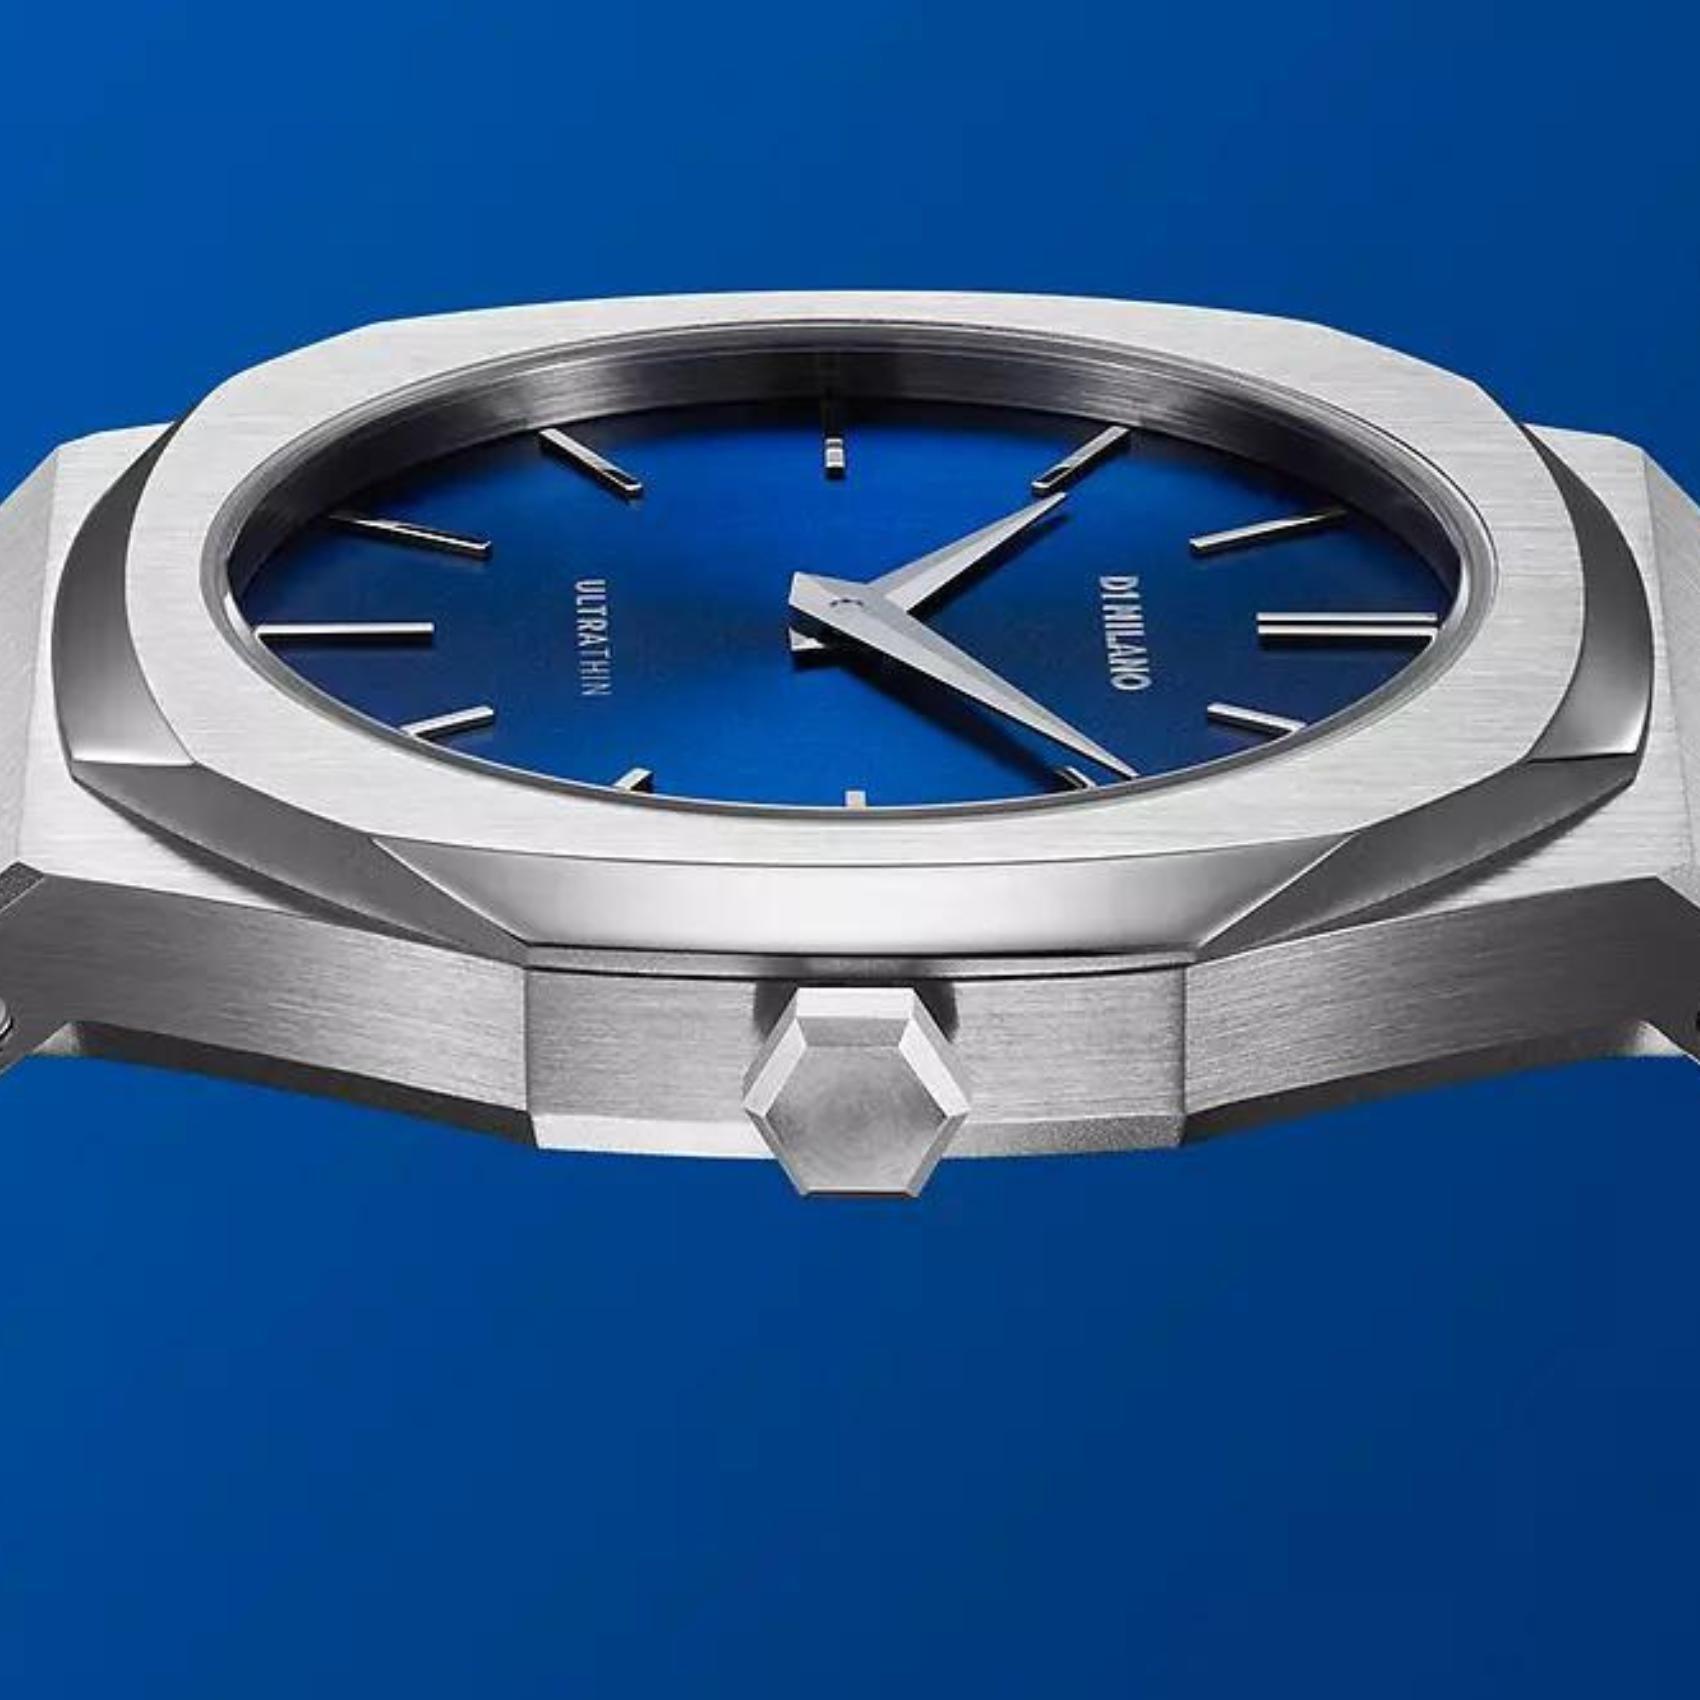 Γυναικείο ρολόι D1 Milano Ultra Thin Mini Geo D1-UTBL21 με ασημί ατσάλινο μπρασελέ και μπλε καντράν 34mm με οκτάγωνο σχήμα.